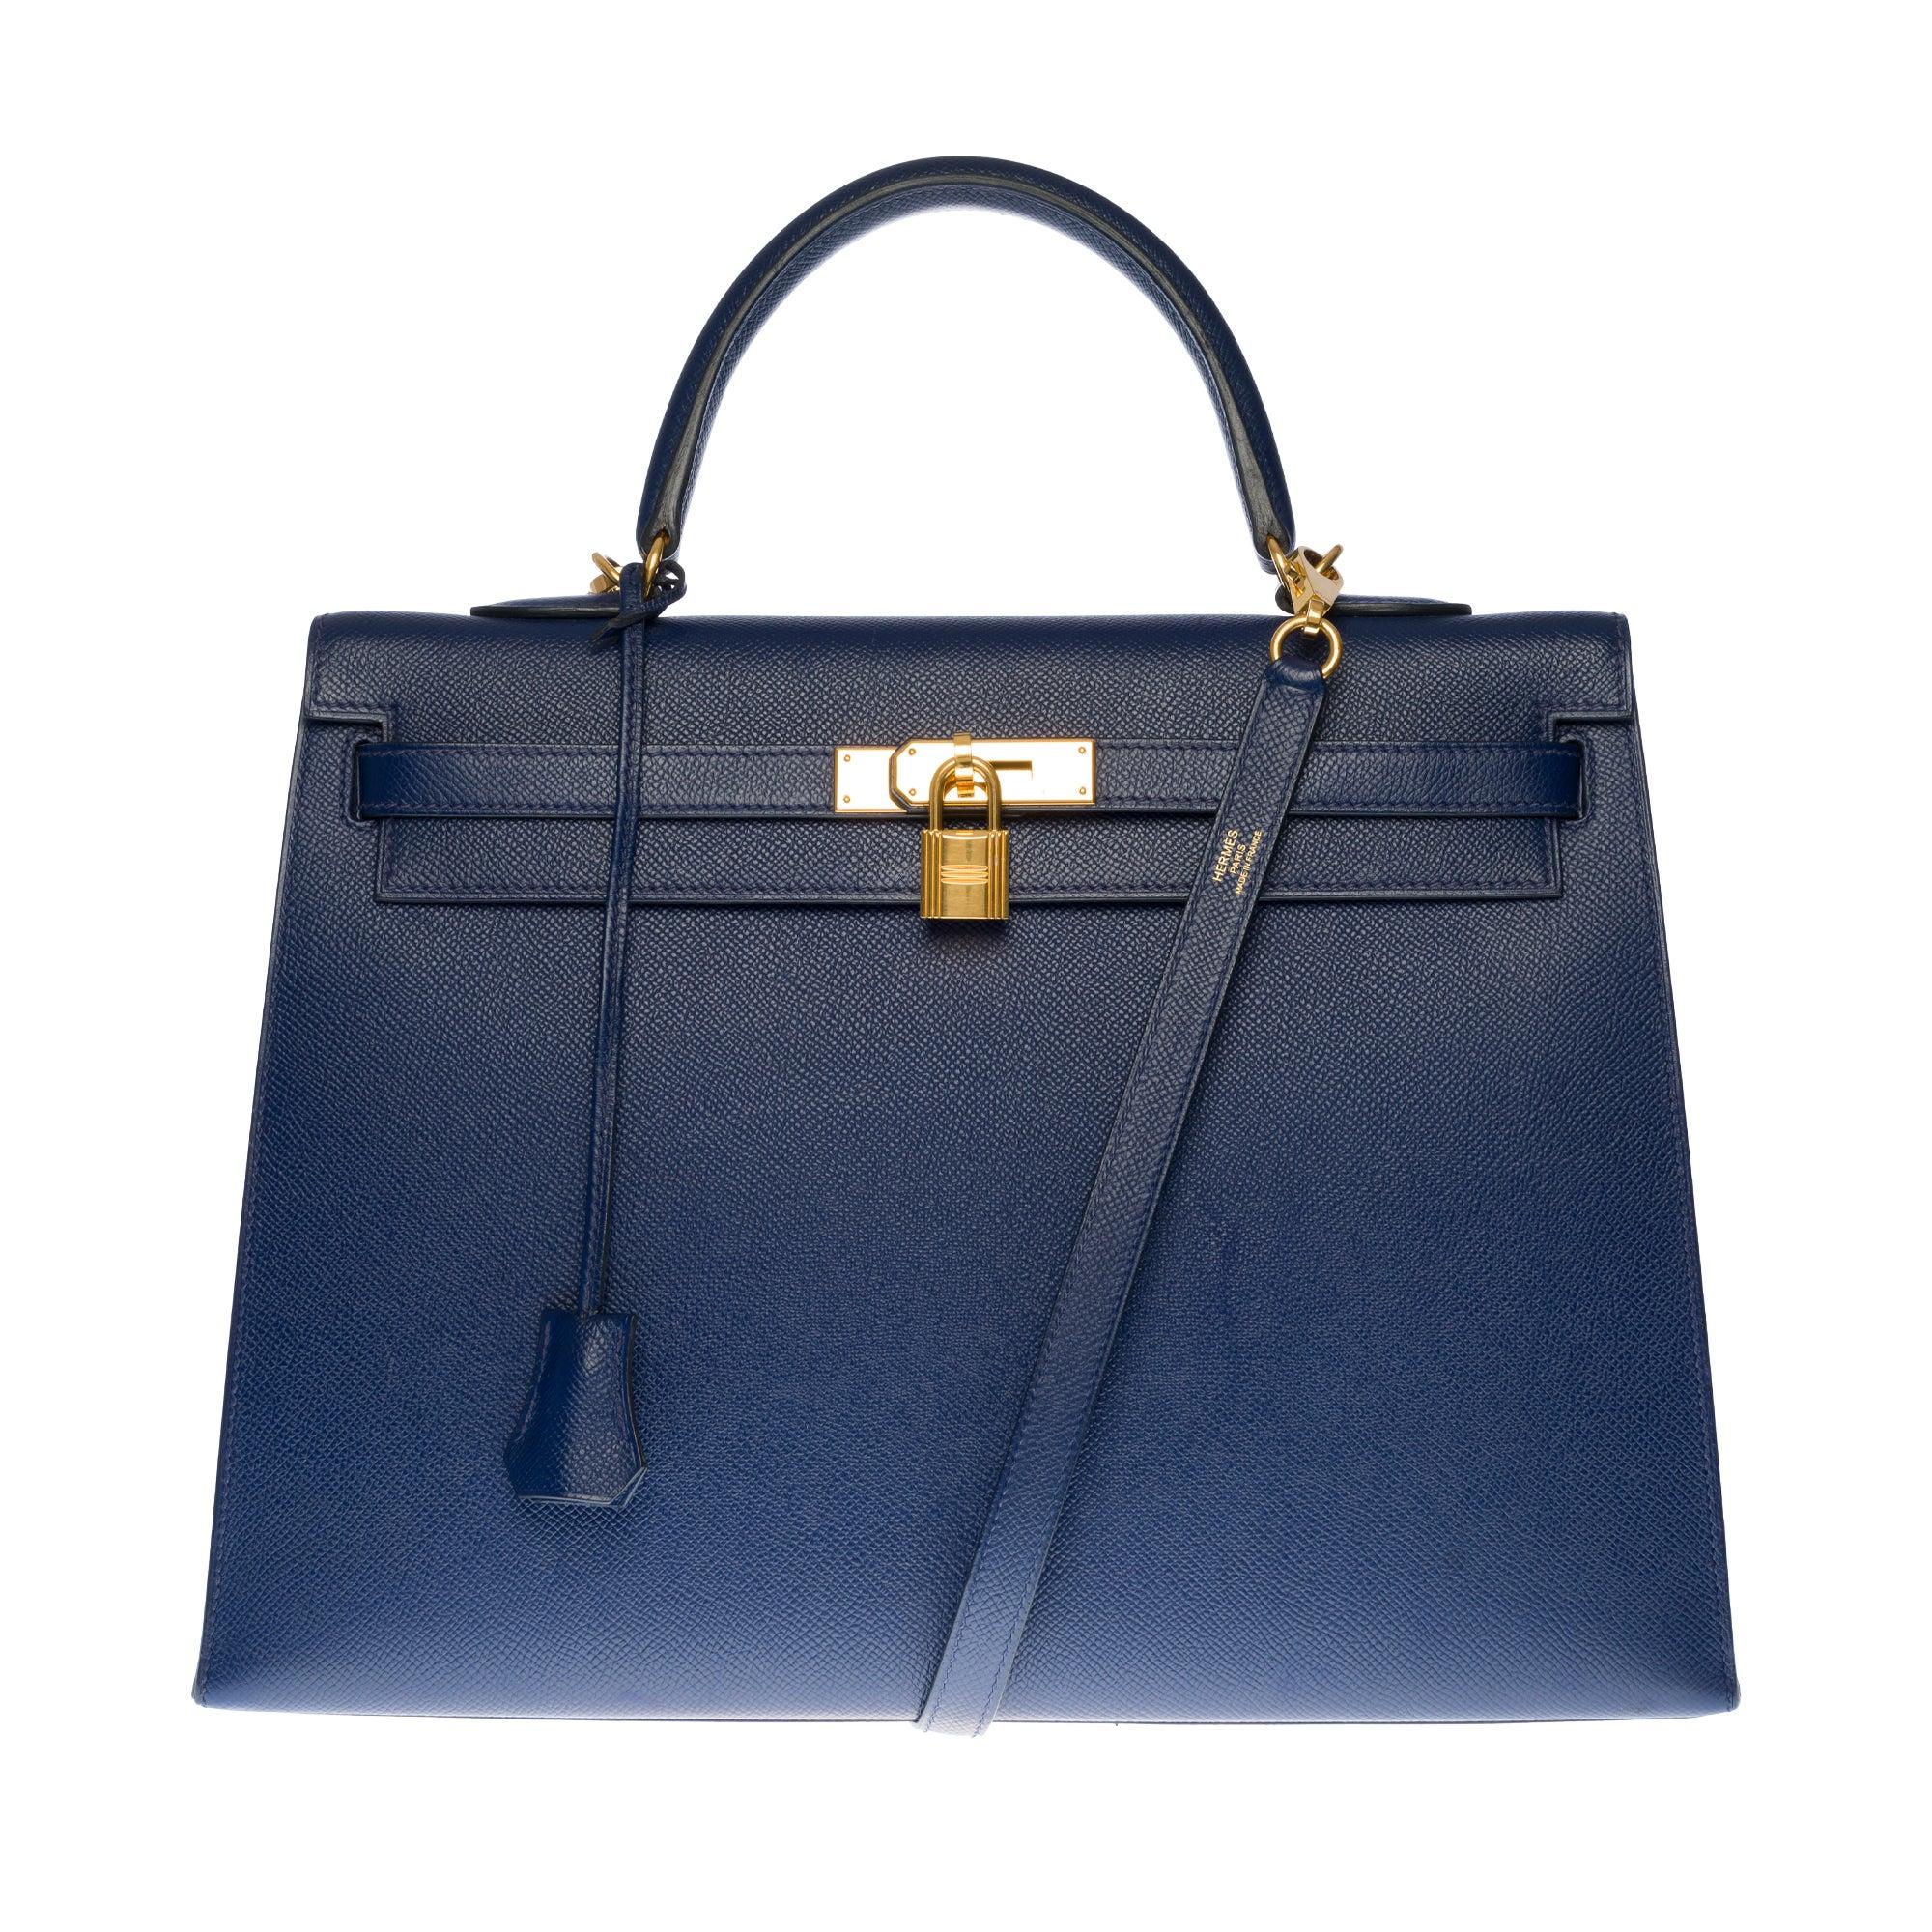 Hermès Kelly 35 sellier strap shoulder bag in epsom blue saphir leather, GHW